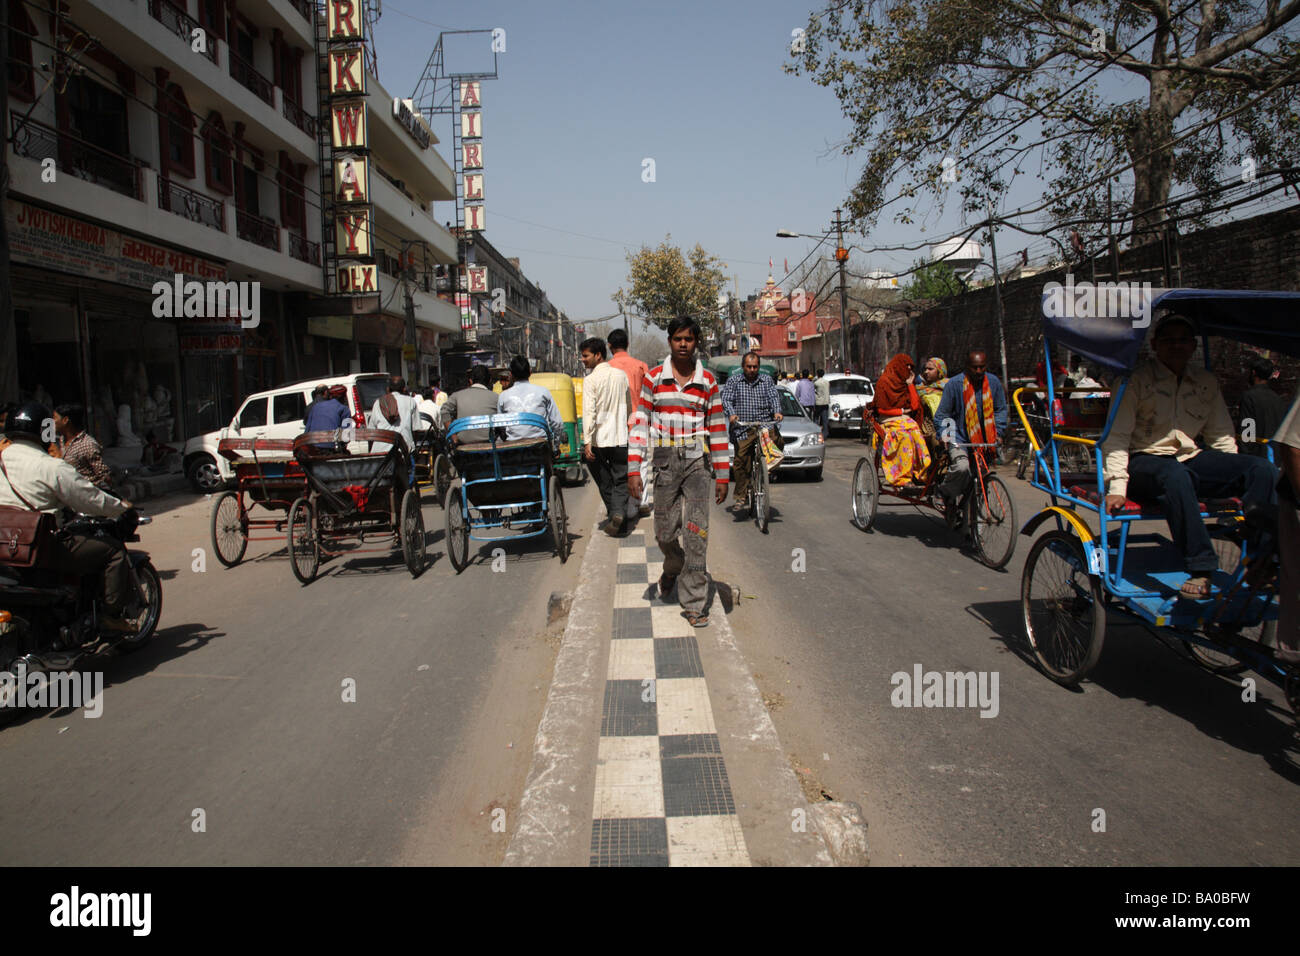 Street scene in Delhi India Stock Photo